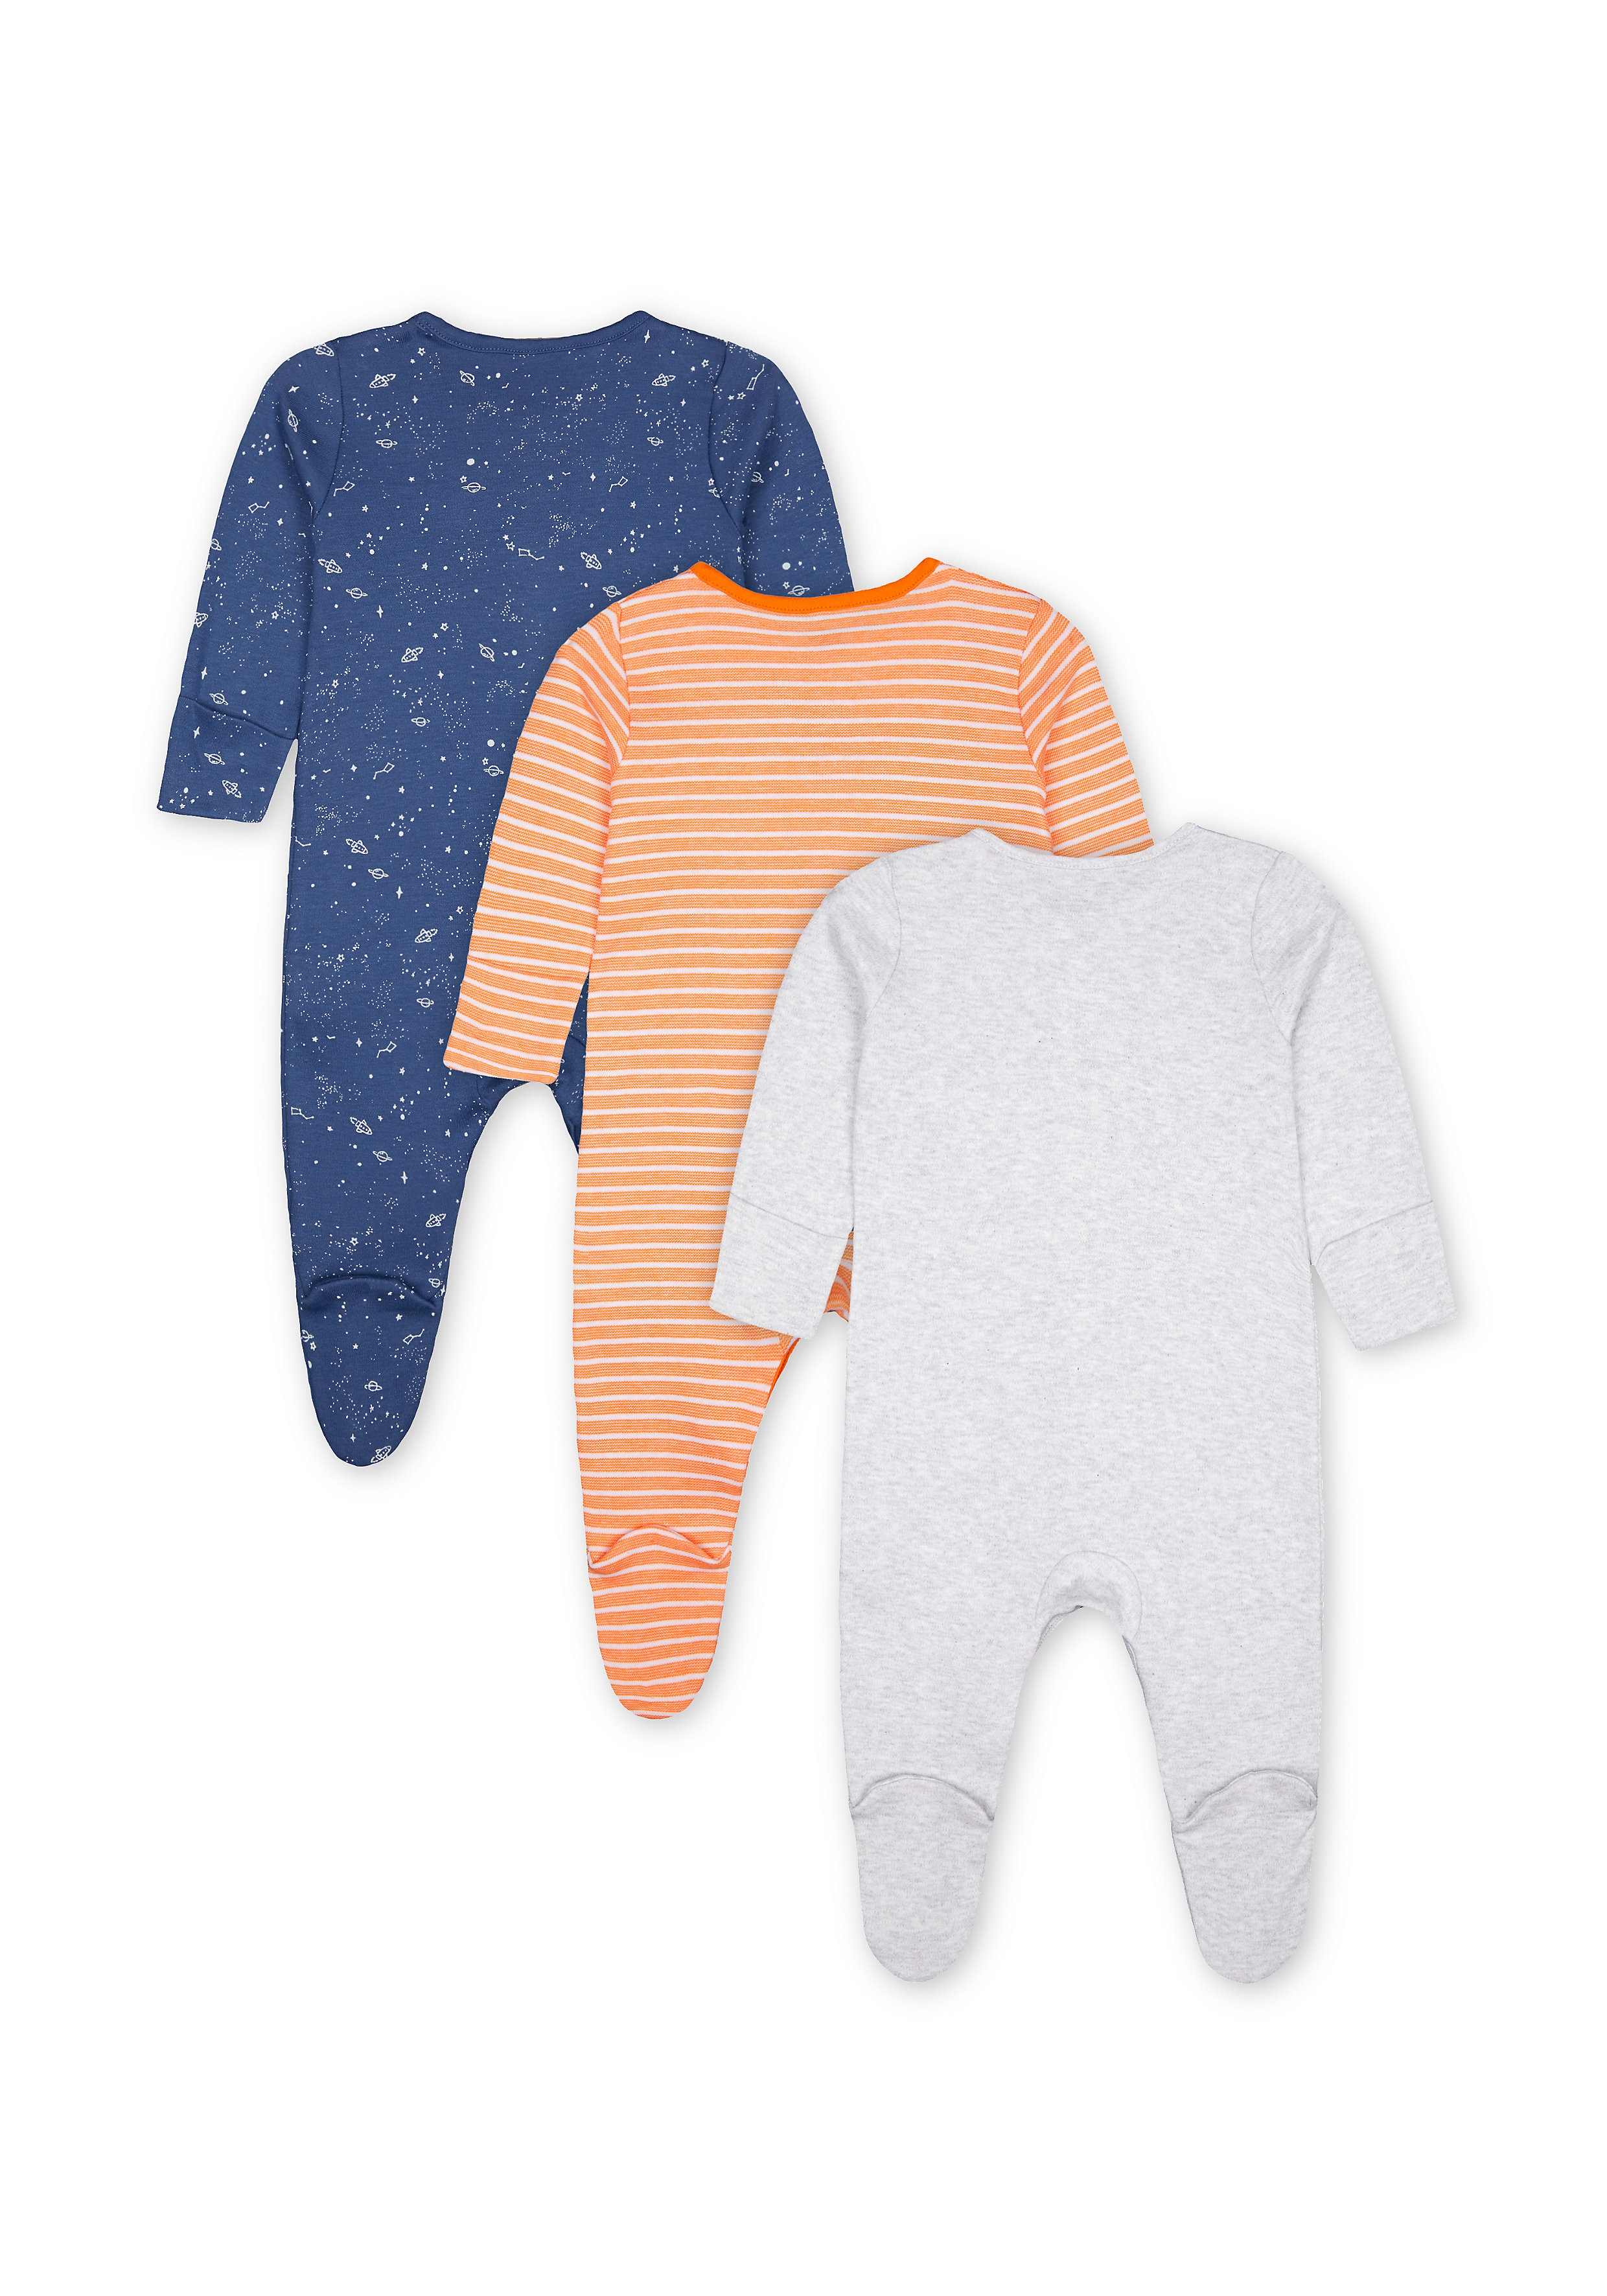 Mothercare | Boys Sleepsuit Space Print - Pack Of 3 - Orange Navy Grey 1